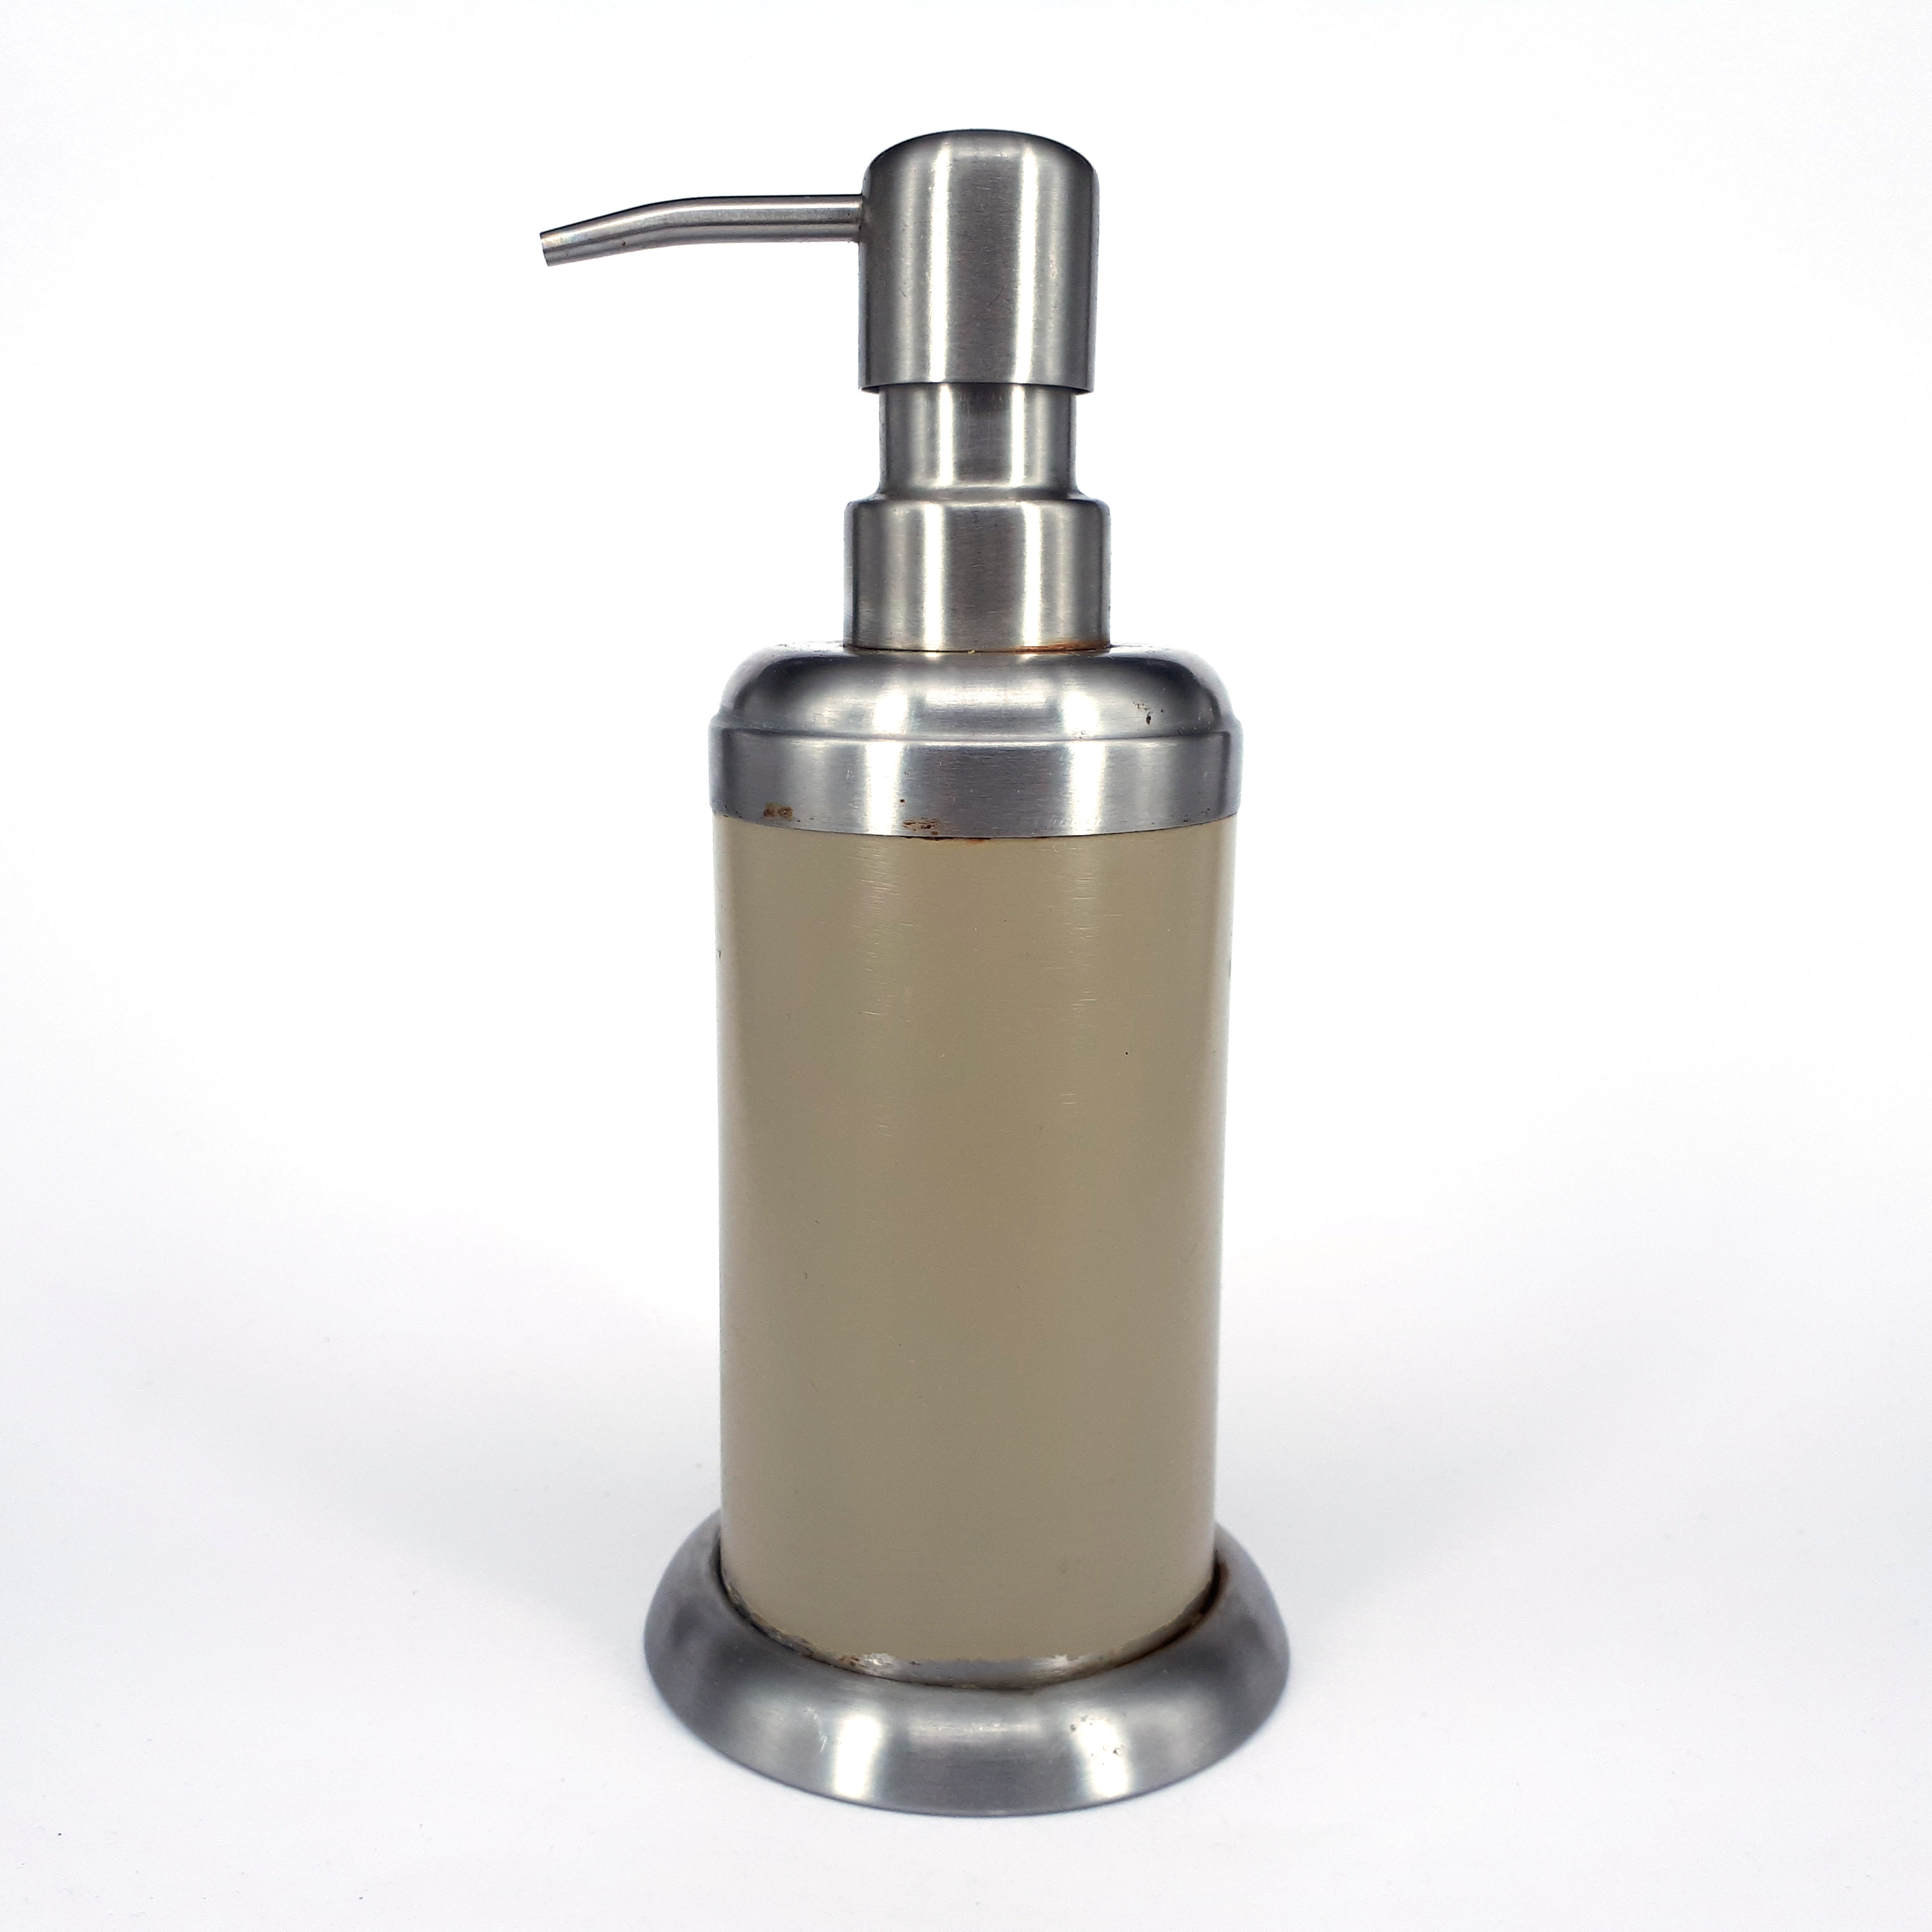 Soapplaner - SoapPlaner-bar soap dispenser, soap grater